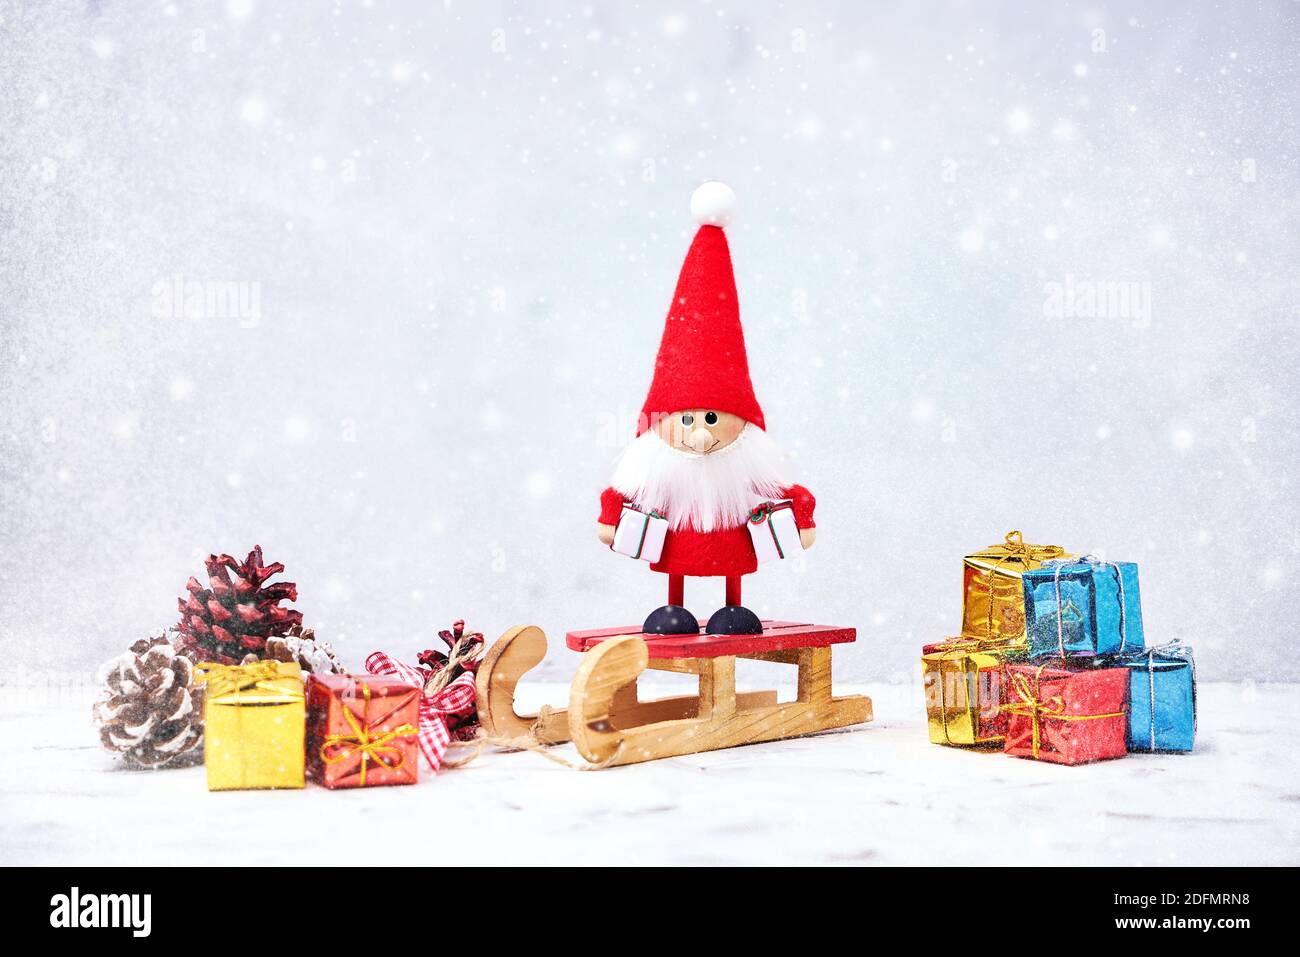 Weihnachtskarte. Santa gnome Hintergrund mit Geschenken und Schnee. Weihnachtssymbol. Stockfoto